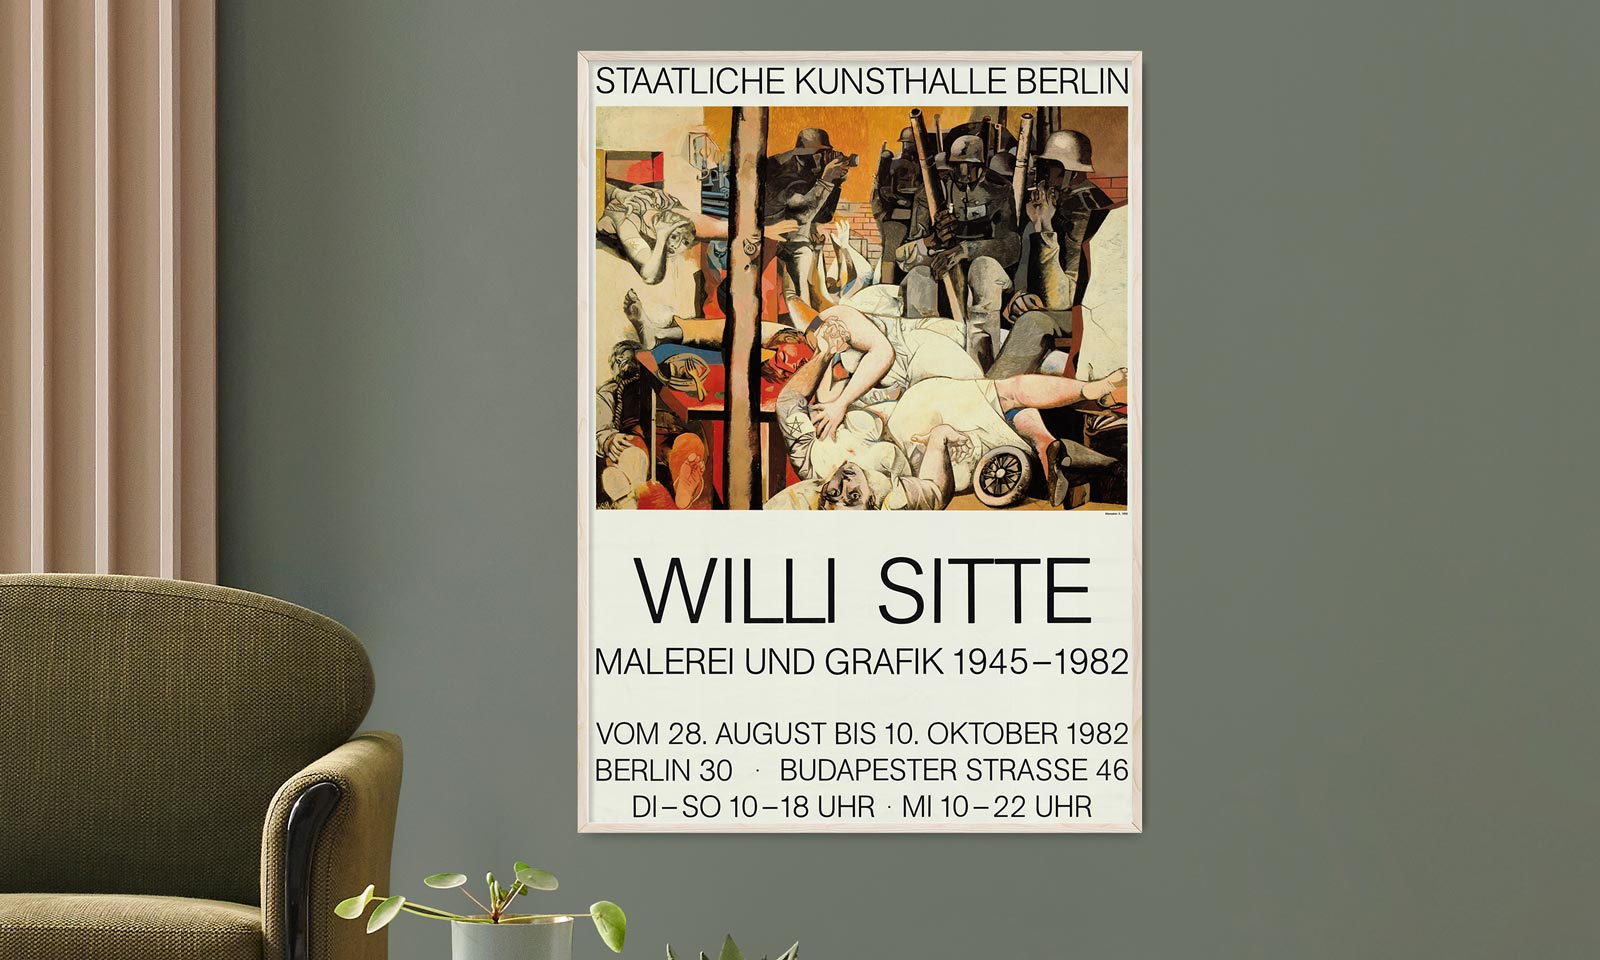 Sitte, Willi - Staatliche Kunsthalle Berlin, 1982